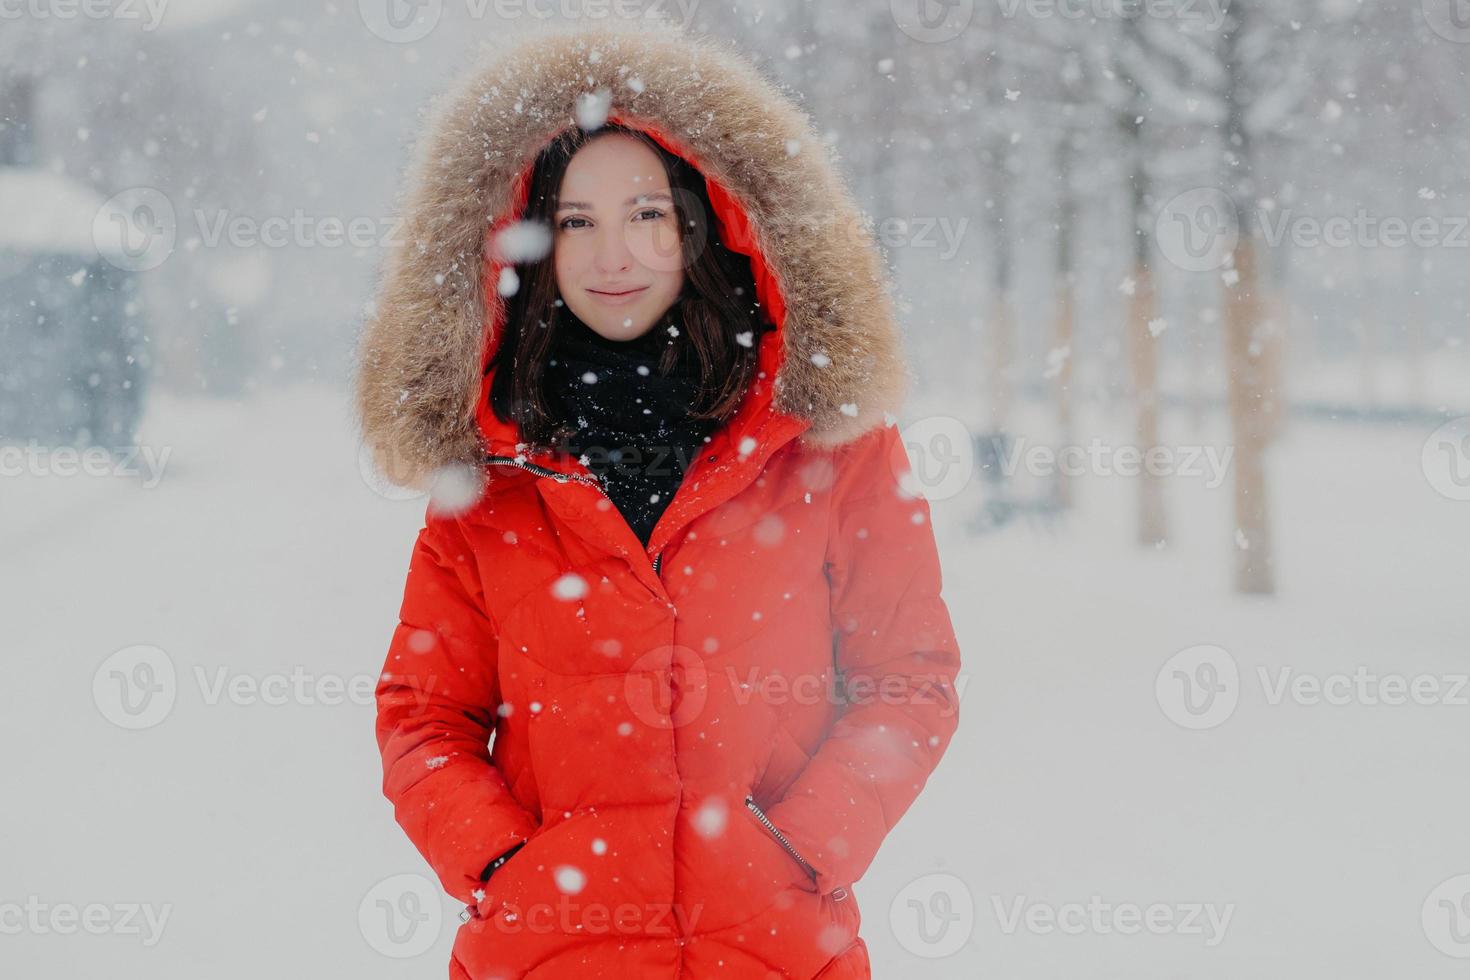 inquadratura alla vita di una donna sorridente attraente con pelle sana, capelli scuri, indossa una giacca rossa, tiene le mani in tasca durante il gelo, si trova su uno sfondo bianco di neve, gode di forti nevicate foto